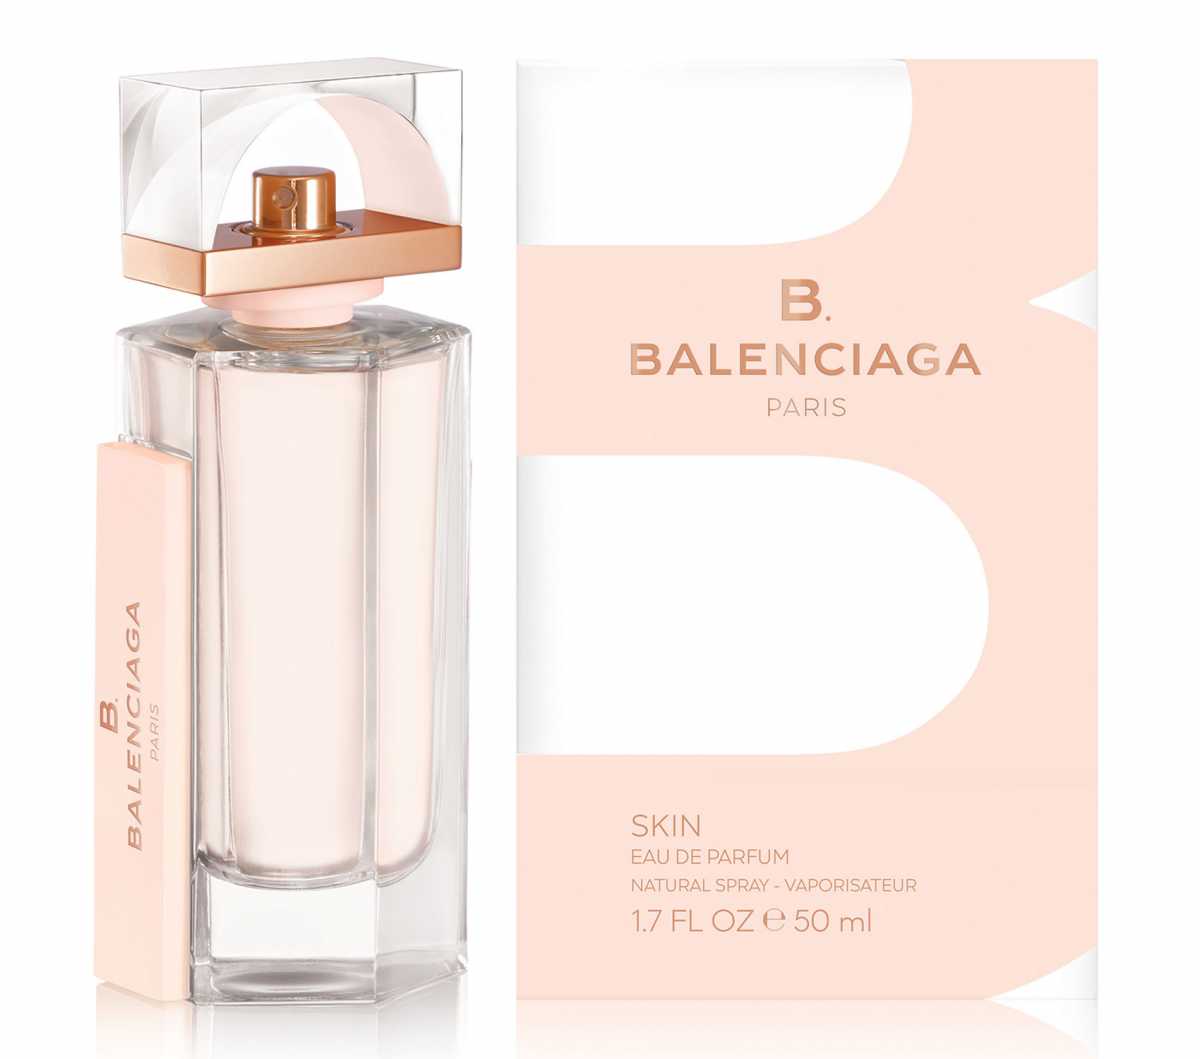 B, Balenciaga é um dos melhores fragrâncias para usar no inverno